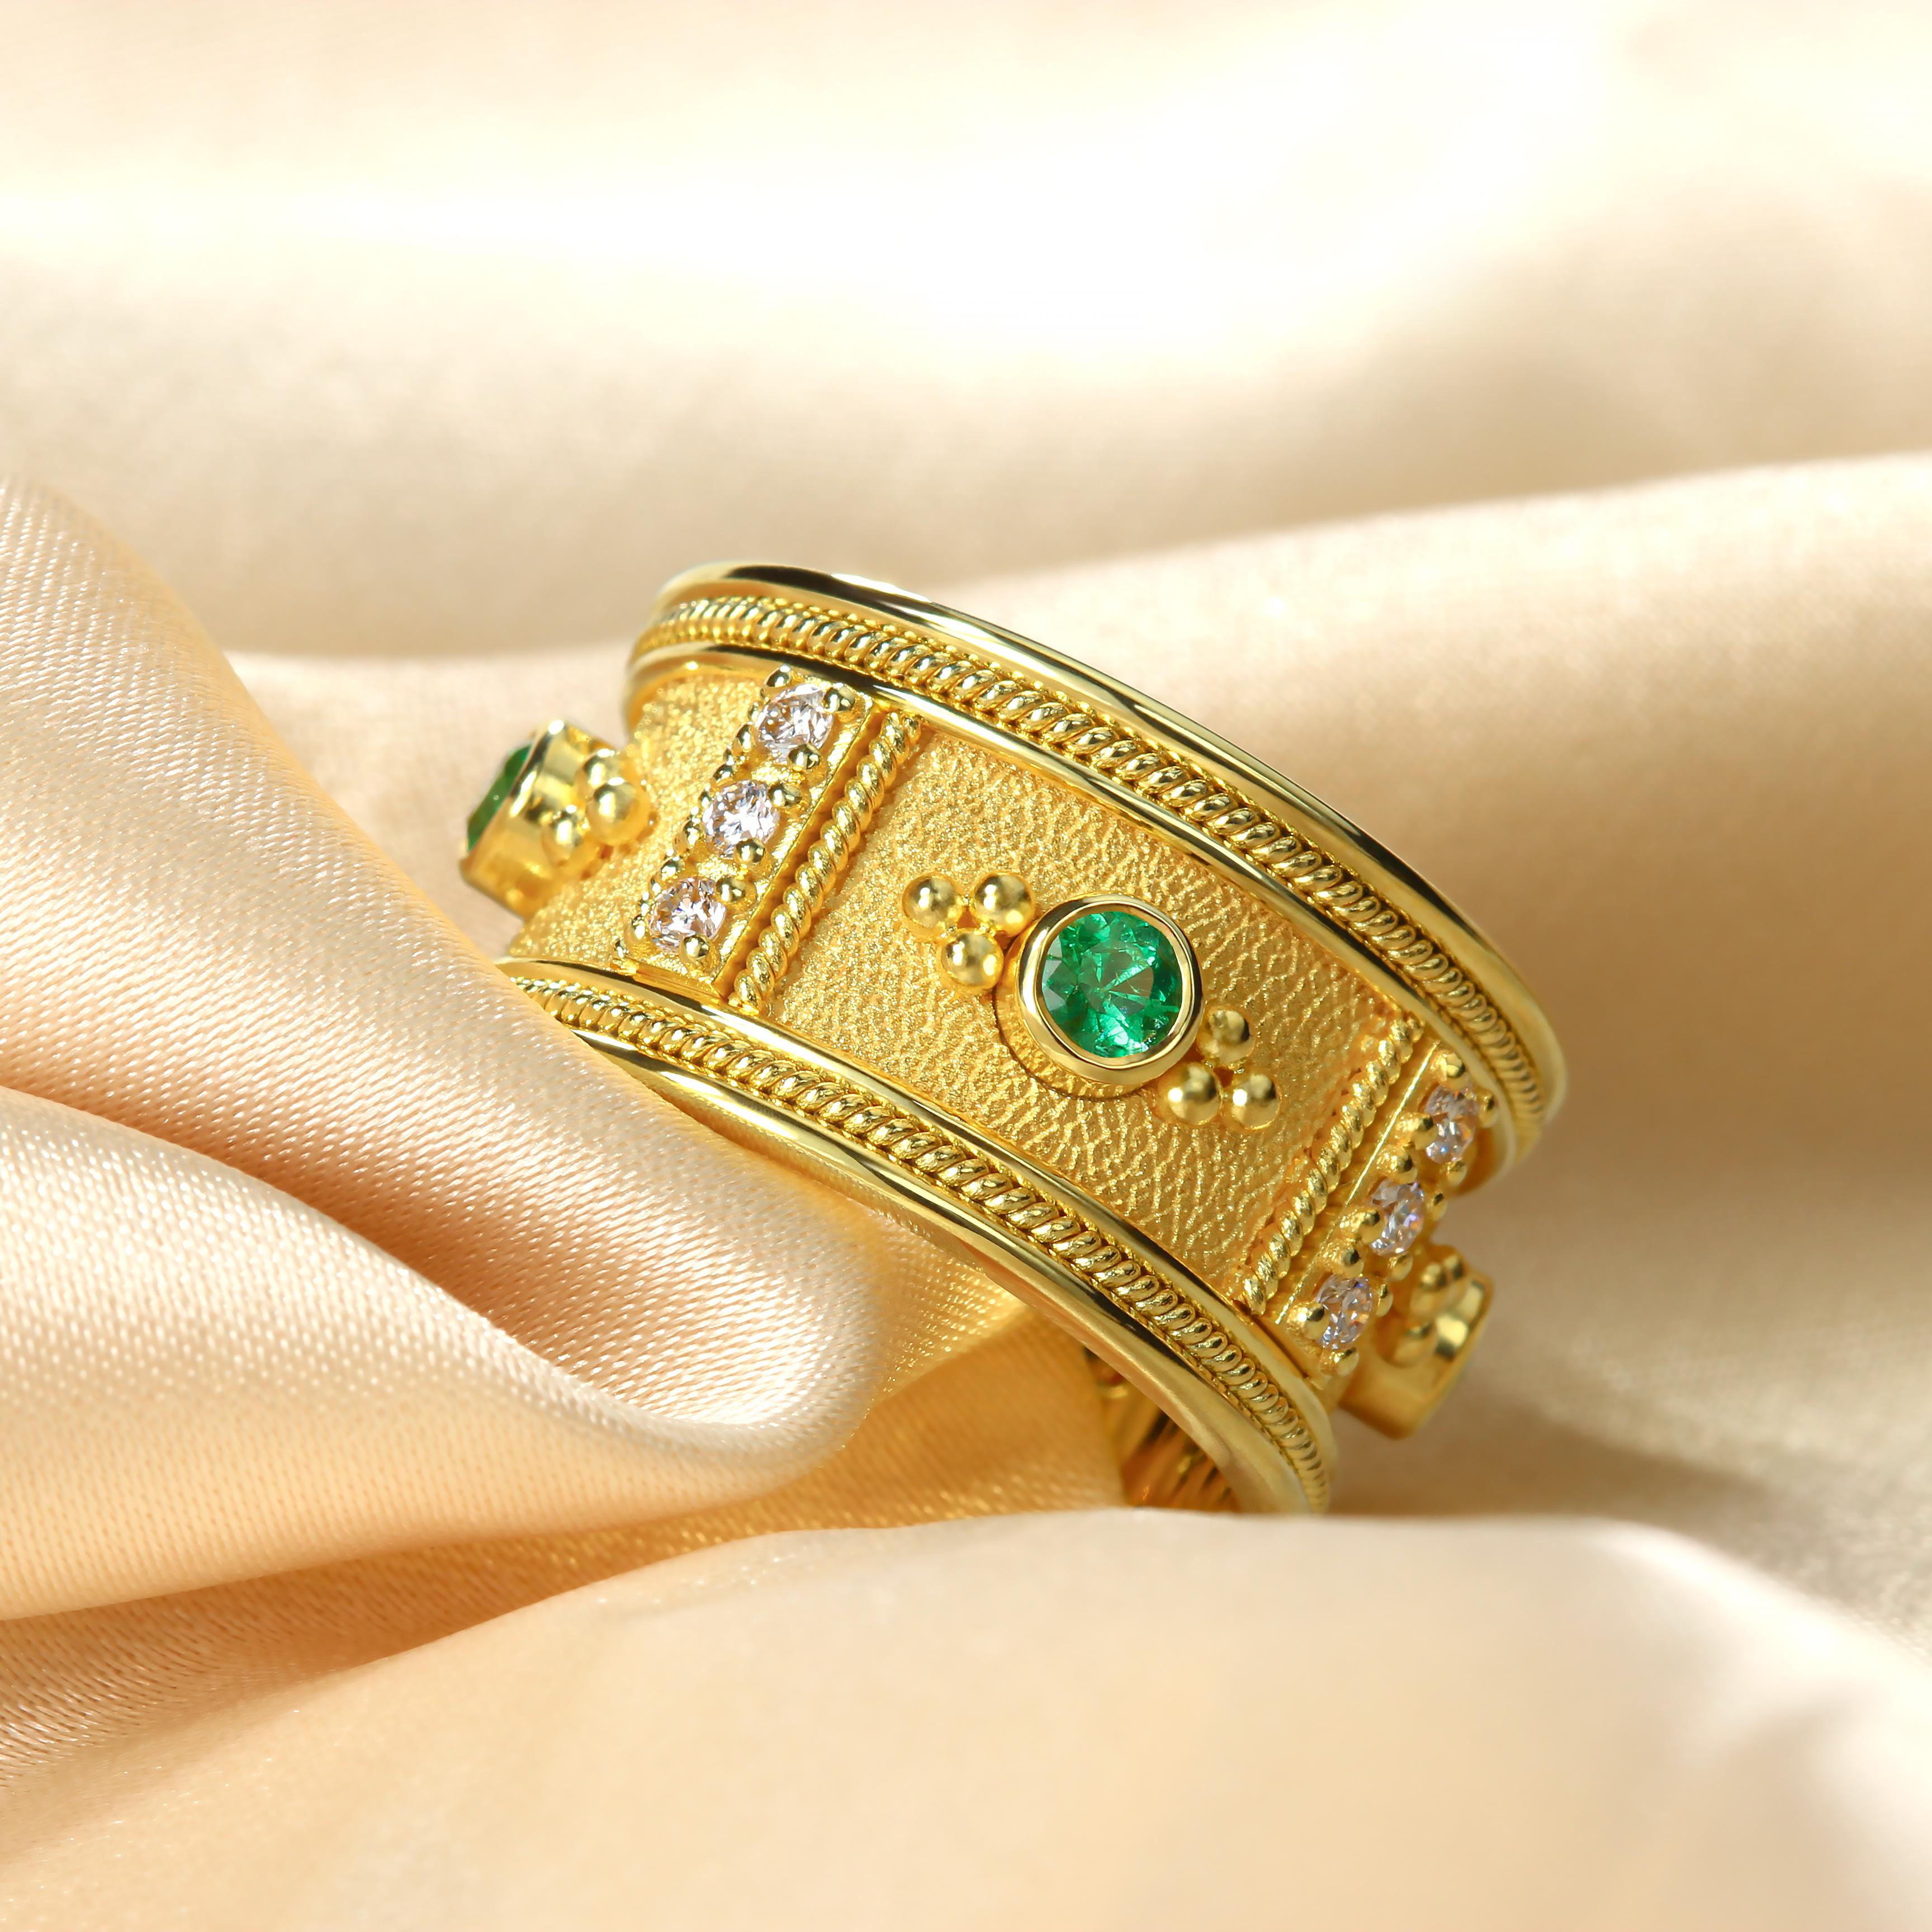 Erhöhen Sie Ihren Stil mit unserem fesselnden Goldring, der mit faszinierenden runden Smaragden und schimmerndem Glanz verziert ist. Aufwendig gearbeitete goldene Details wie die zarten Granulationen, die die Smaragde umgeben, und die dazwischen